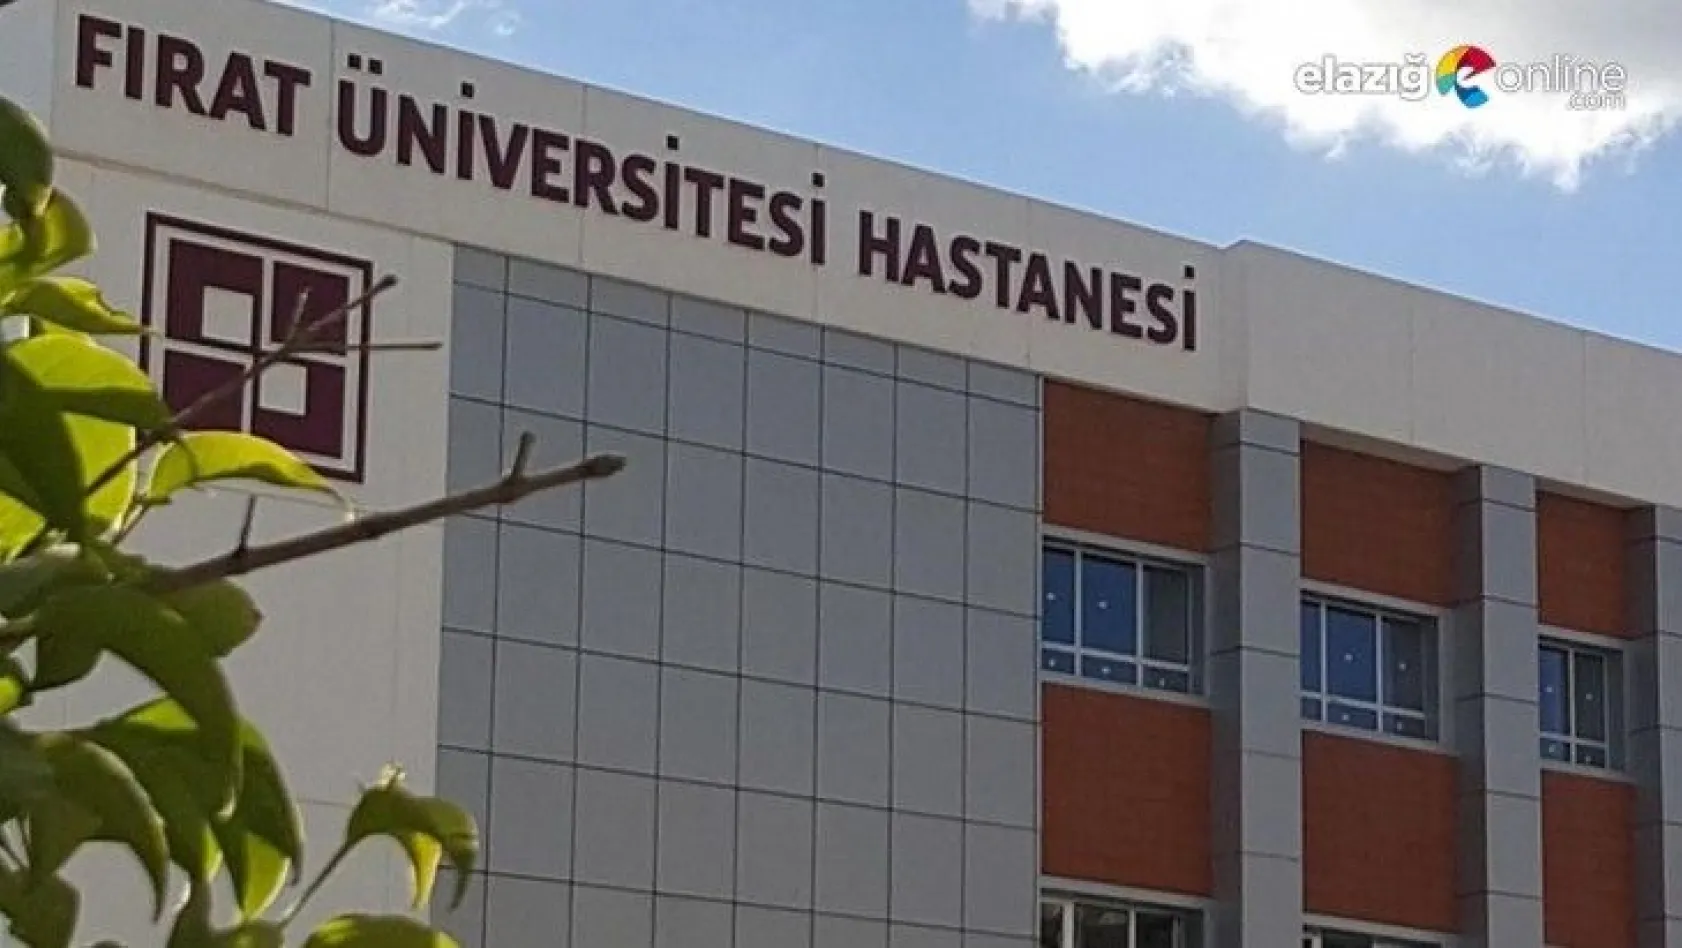 Fırat Üniversitesi Hastanesinde Üçlü Vardiya Sistemine Geçildi